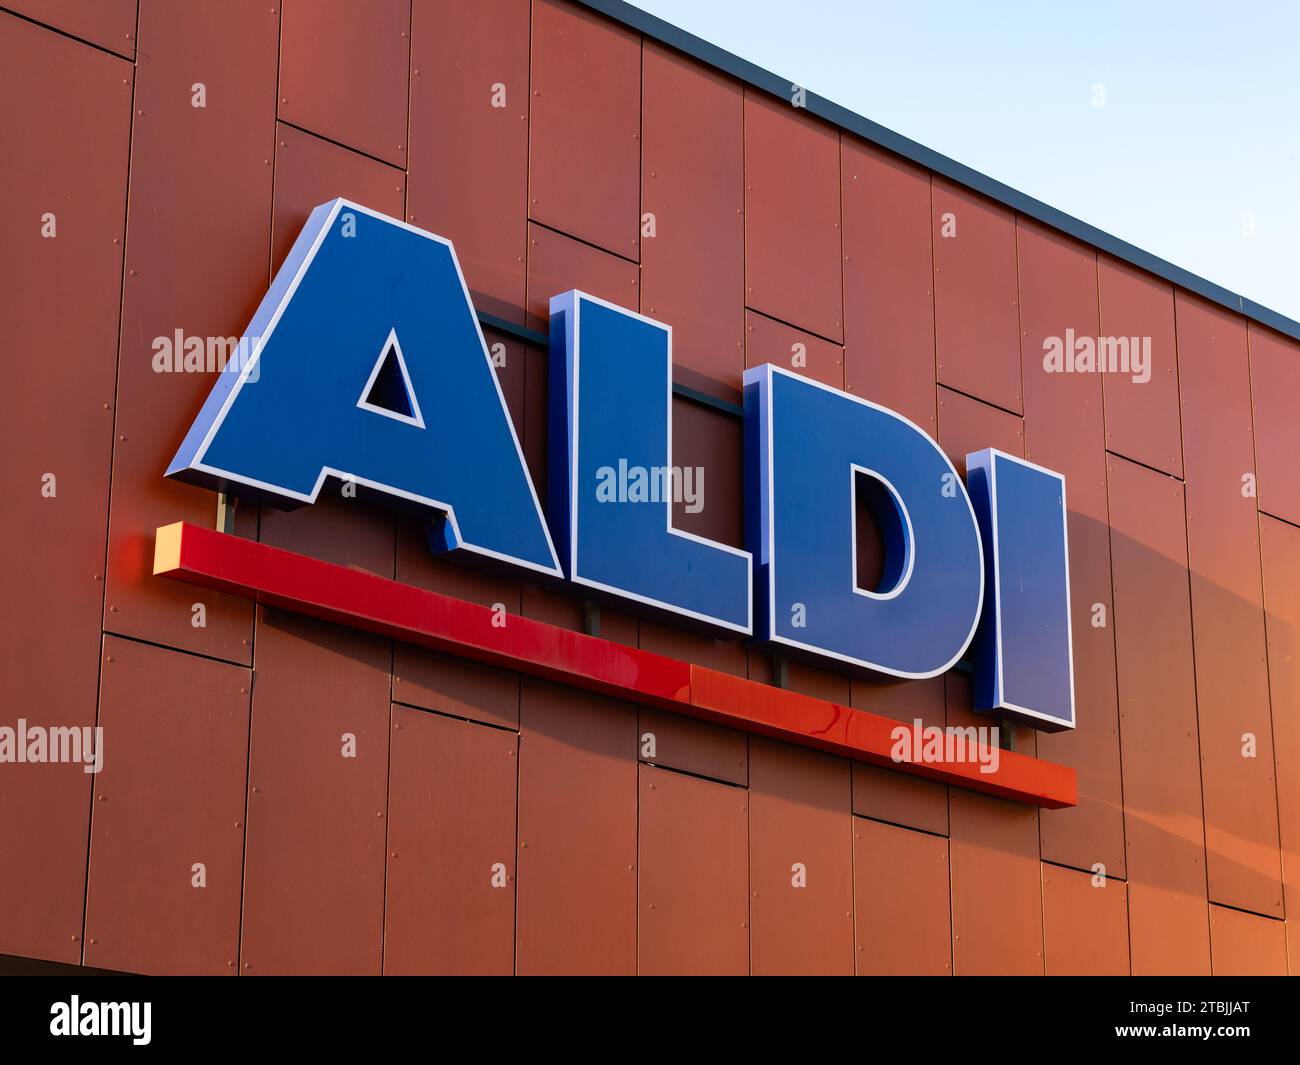 Signe logo ALDI du magasin allemand de discounter alimentaire. Gros plan du logotype sur la façade. Le détaillant d'épicerie est une entreprise très prospère. Banque D'Images